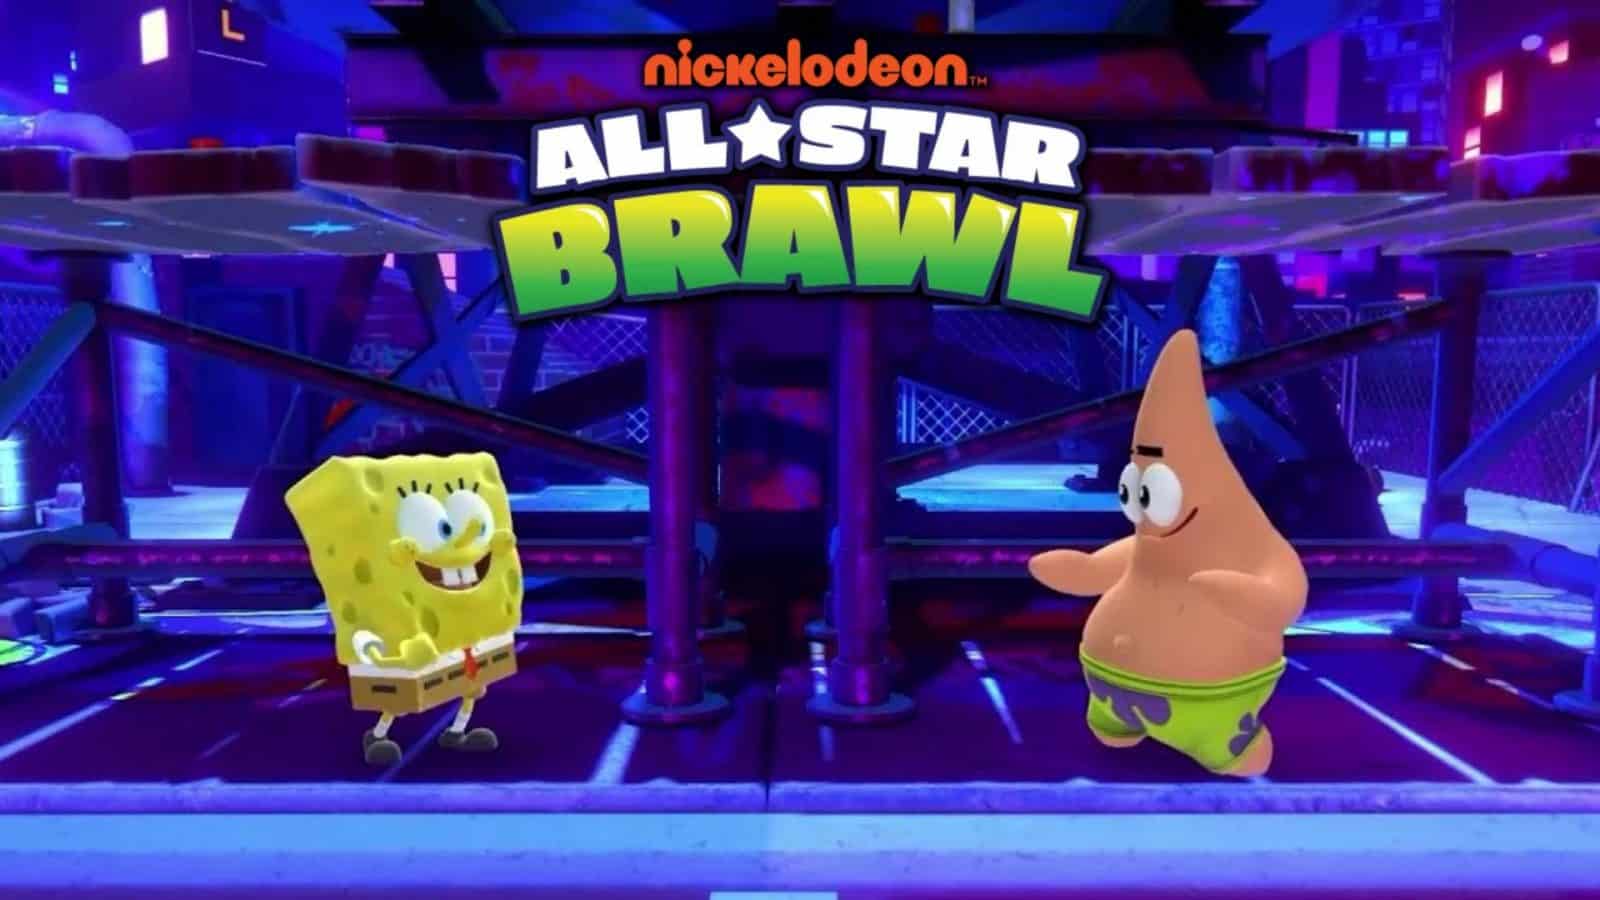 Nickelodeon All Star Brawl Karatra vaovao E1652194625771